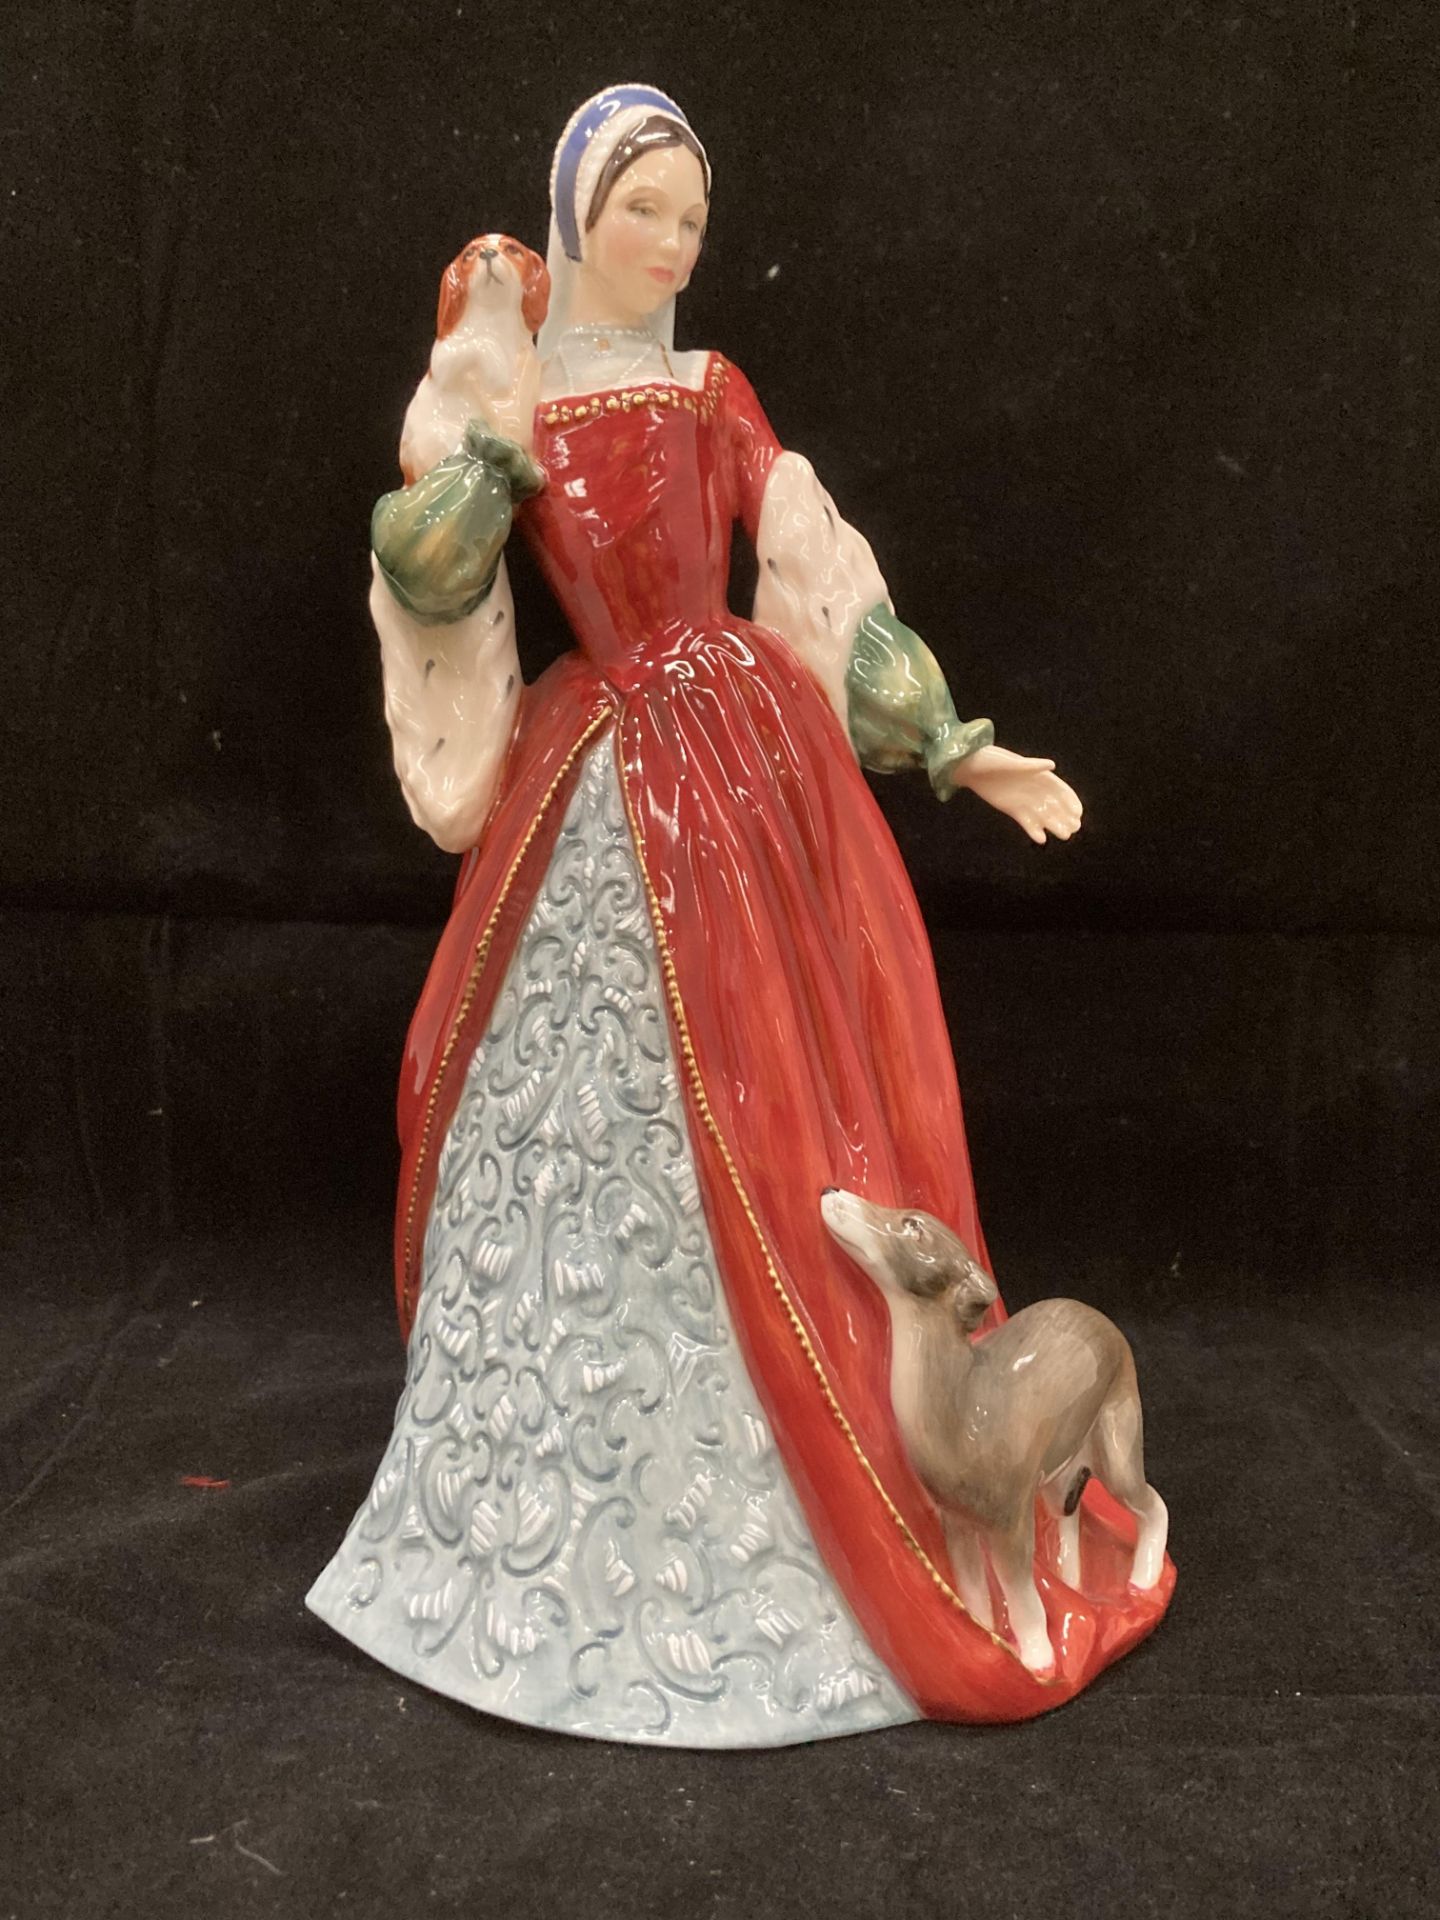 A Royal Doulton Limited Edition fine China figurine of 'Anne Boleyn HN3232' 40/9500 23.